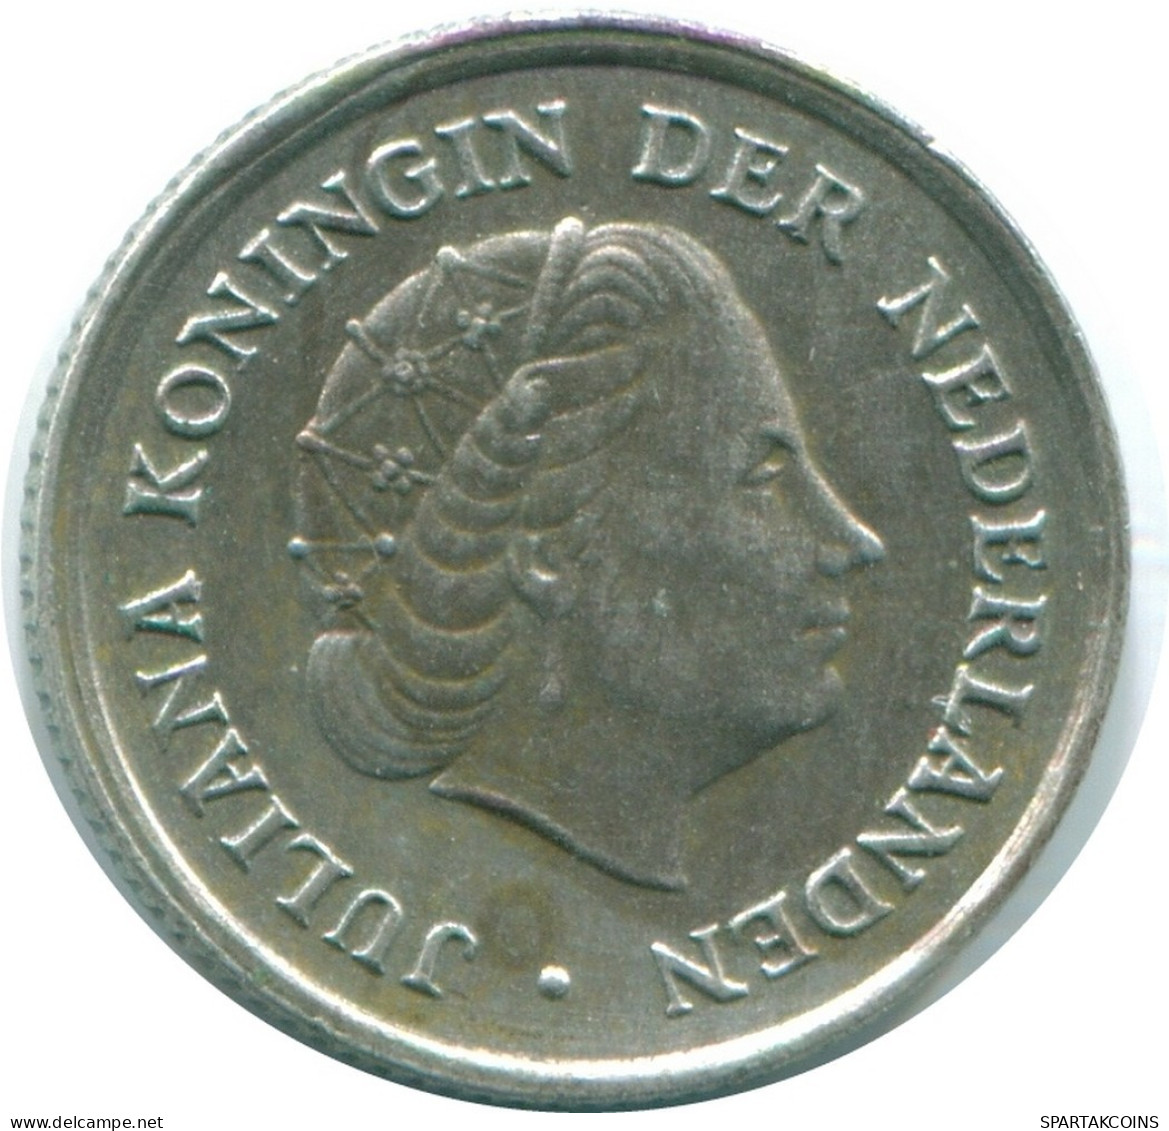 1/10 GULDEN 1970 NIEDERLÄNDISCHE ANTILLEN SILBER Koloniale Münze #NL13004.3.D.A - Antille Olandesi